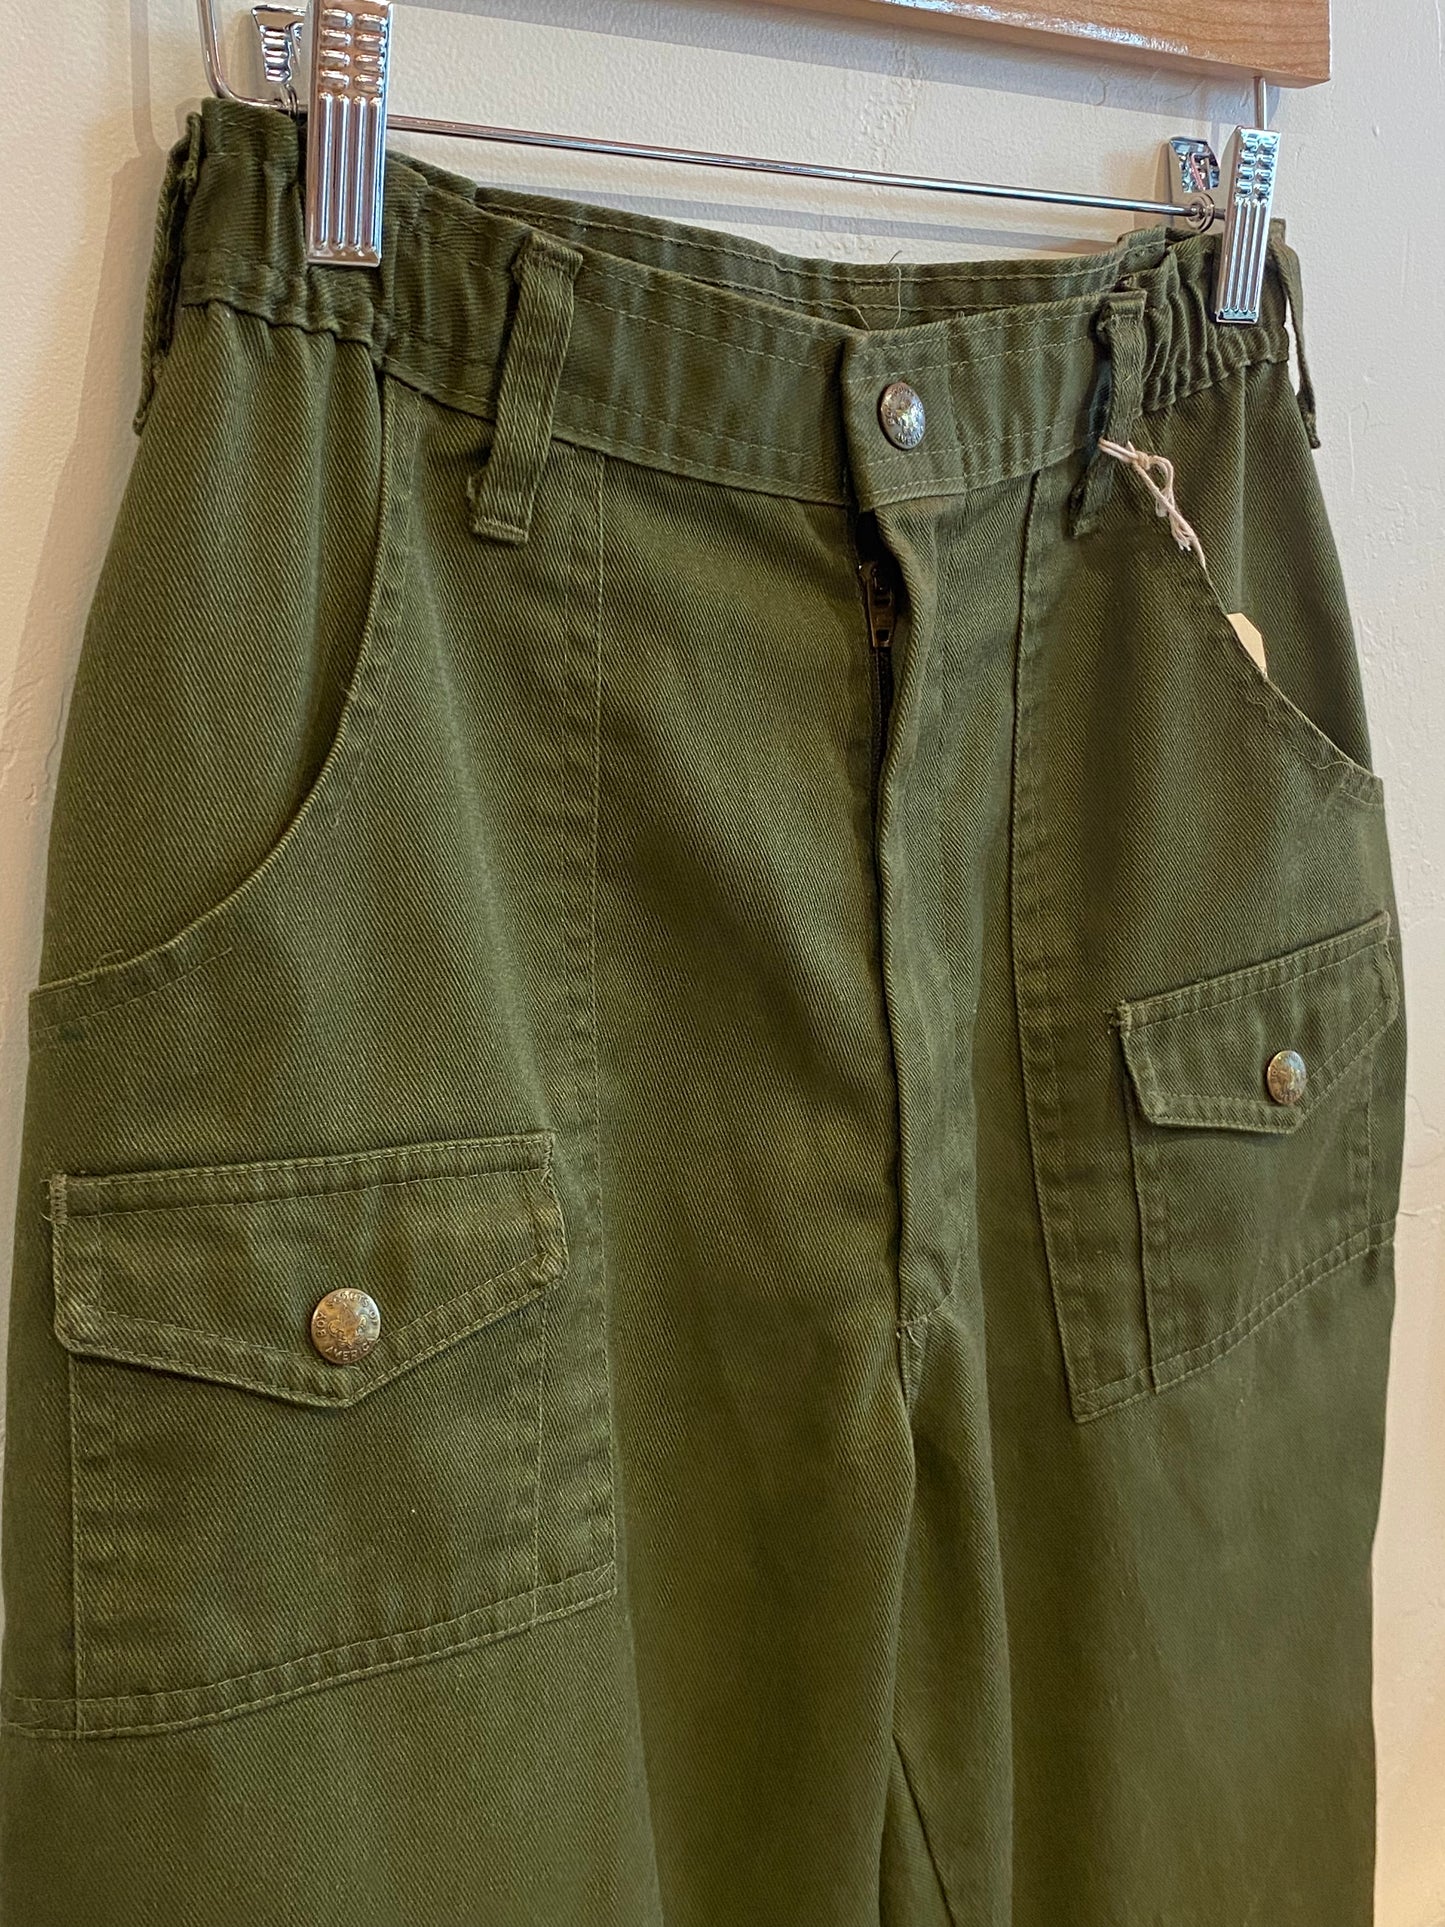 Vintage Boy Scout Pants - 27x32